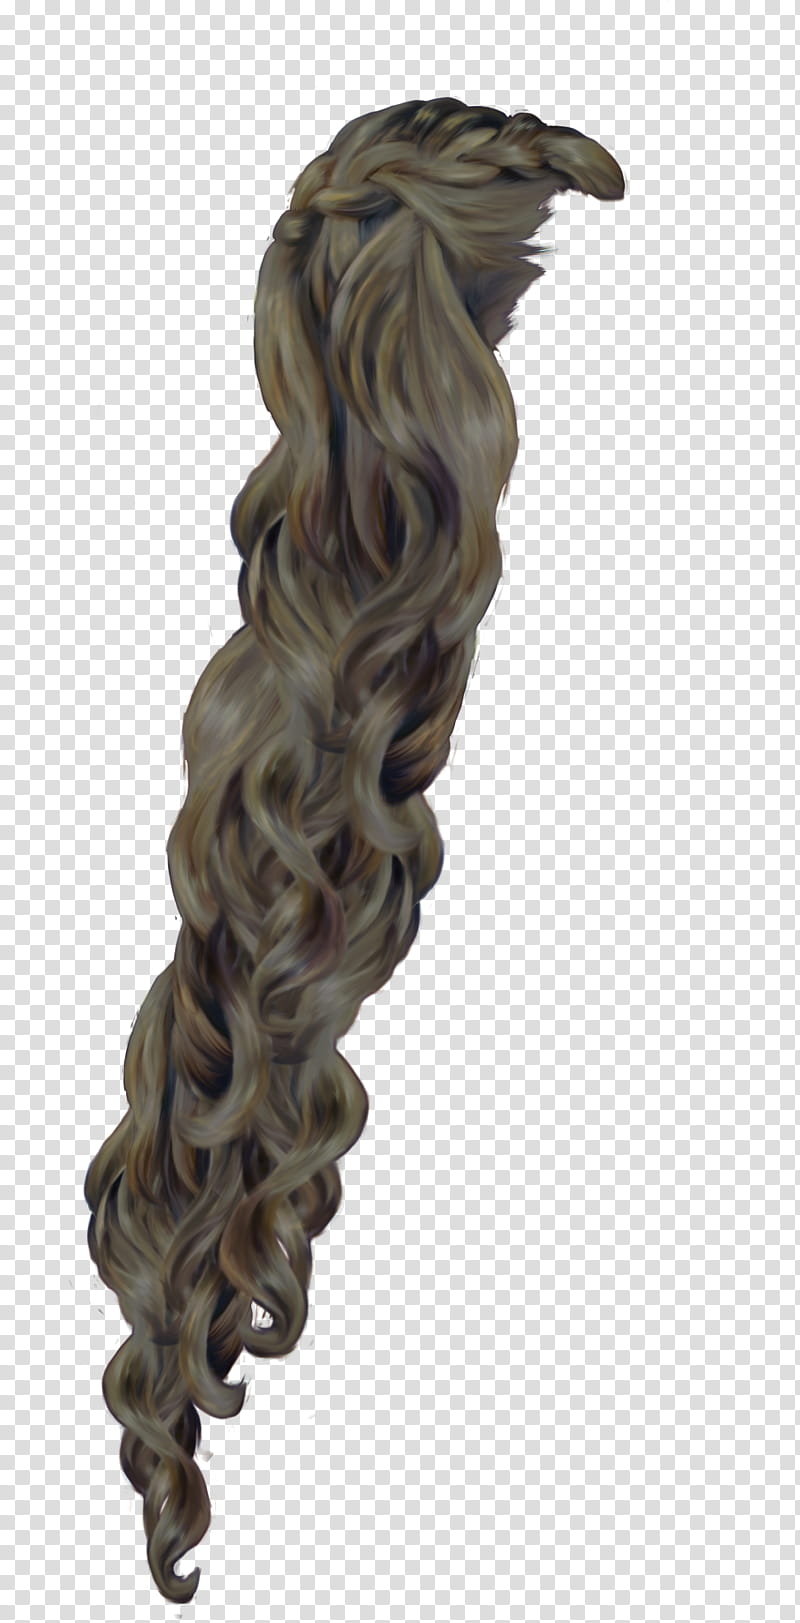 Rapunzel Charcoal, black hair extension transparent background PNG clipart